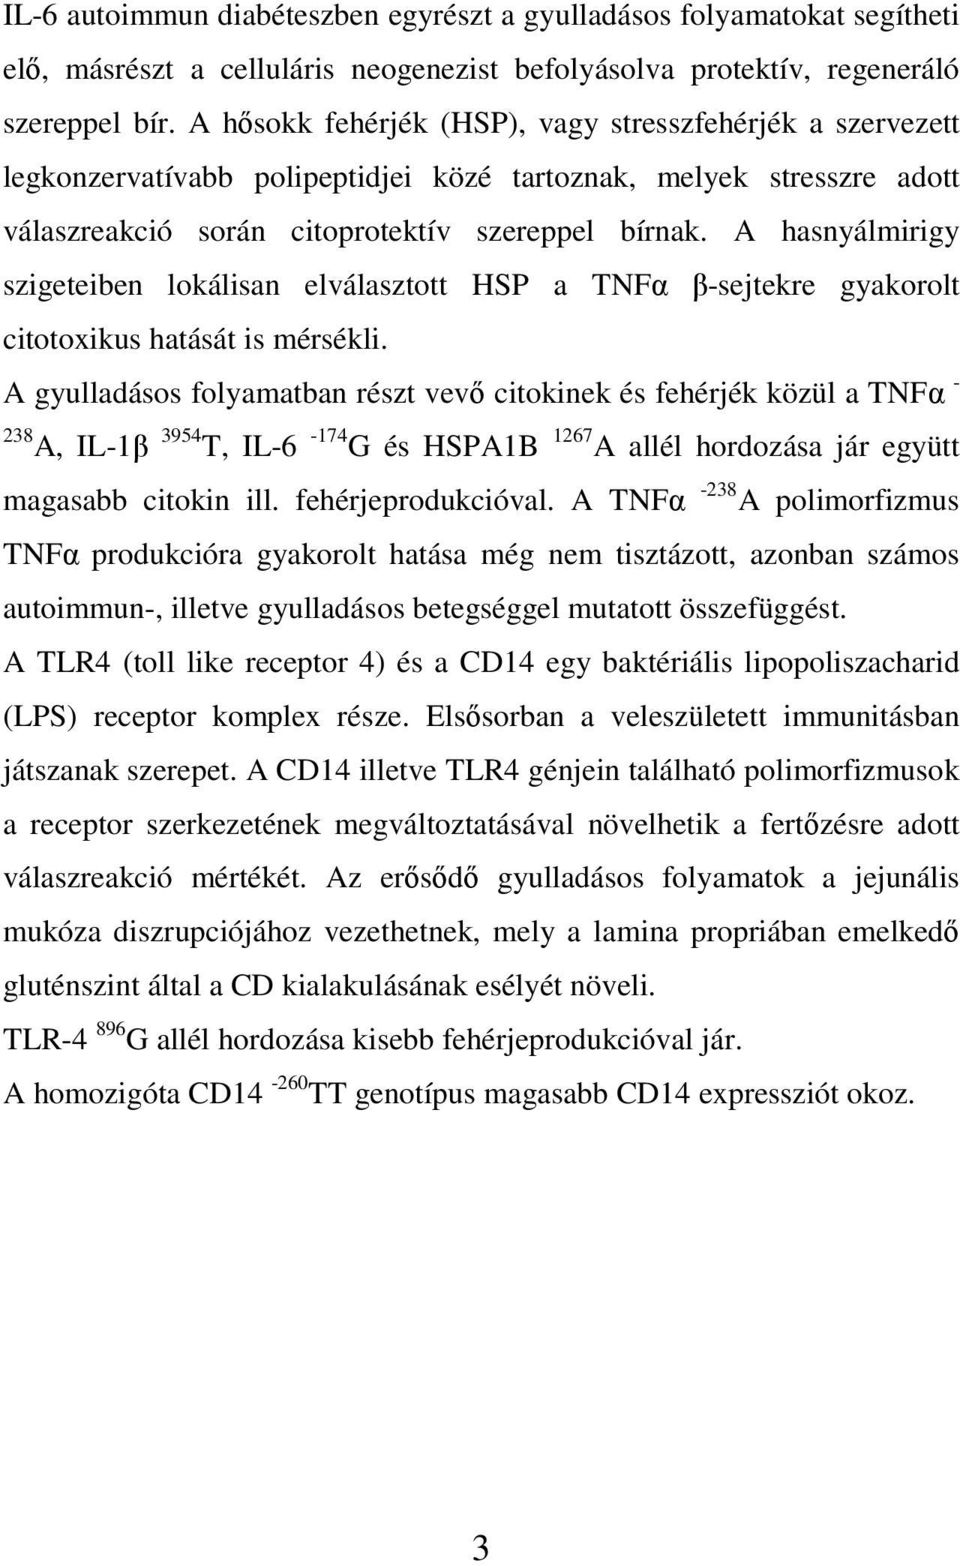 A hasnyálmirigy szigeteiben lokálisan elválasztott HSP a TNFα β-sejtekre gyakorolt citotoxikus hatását is mérsékli.